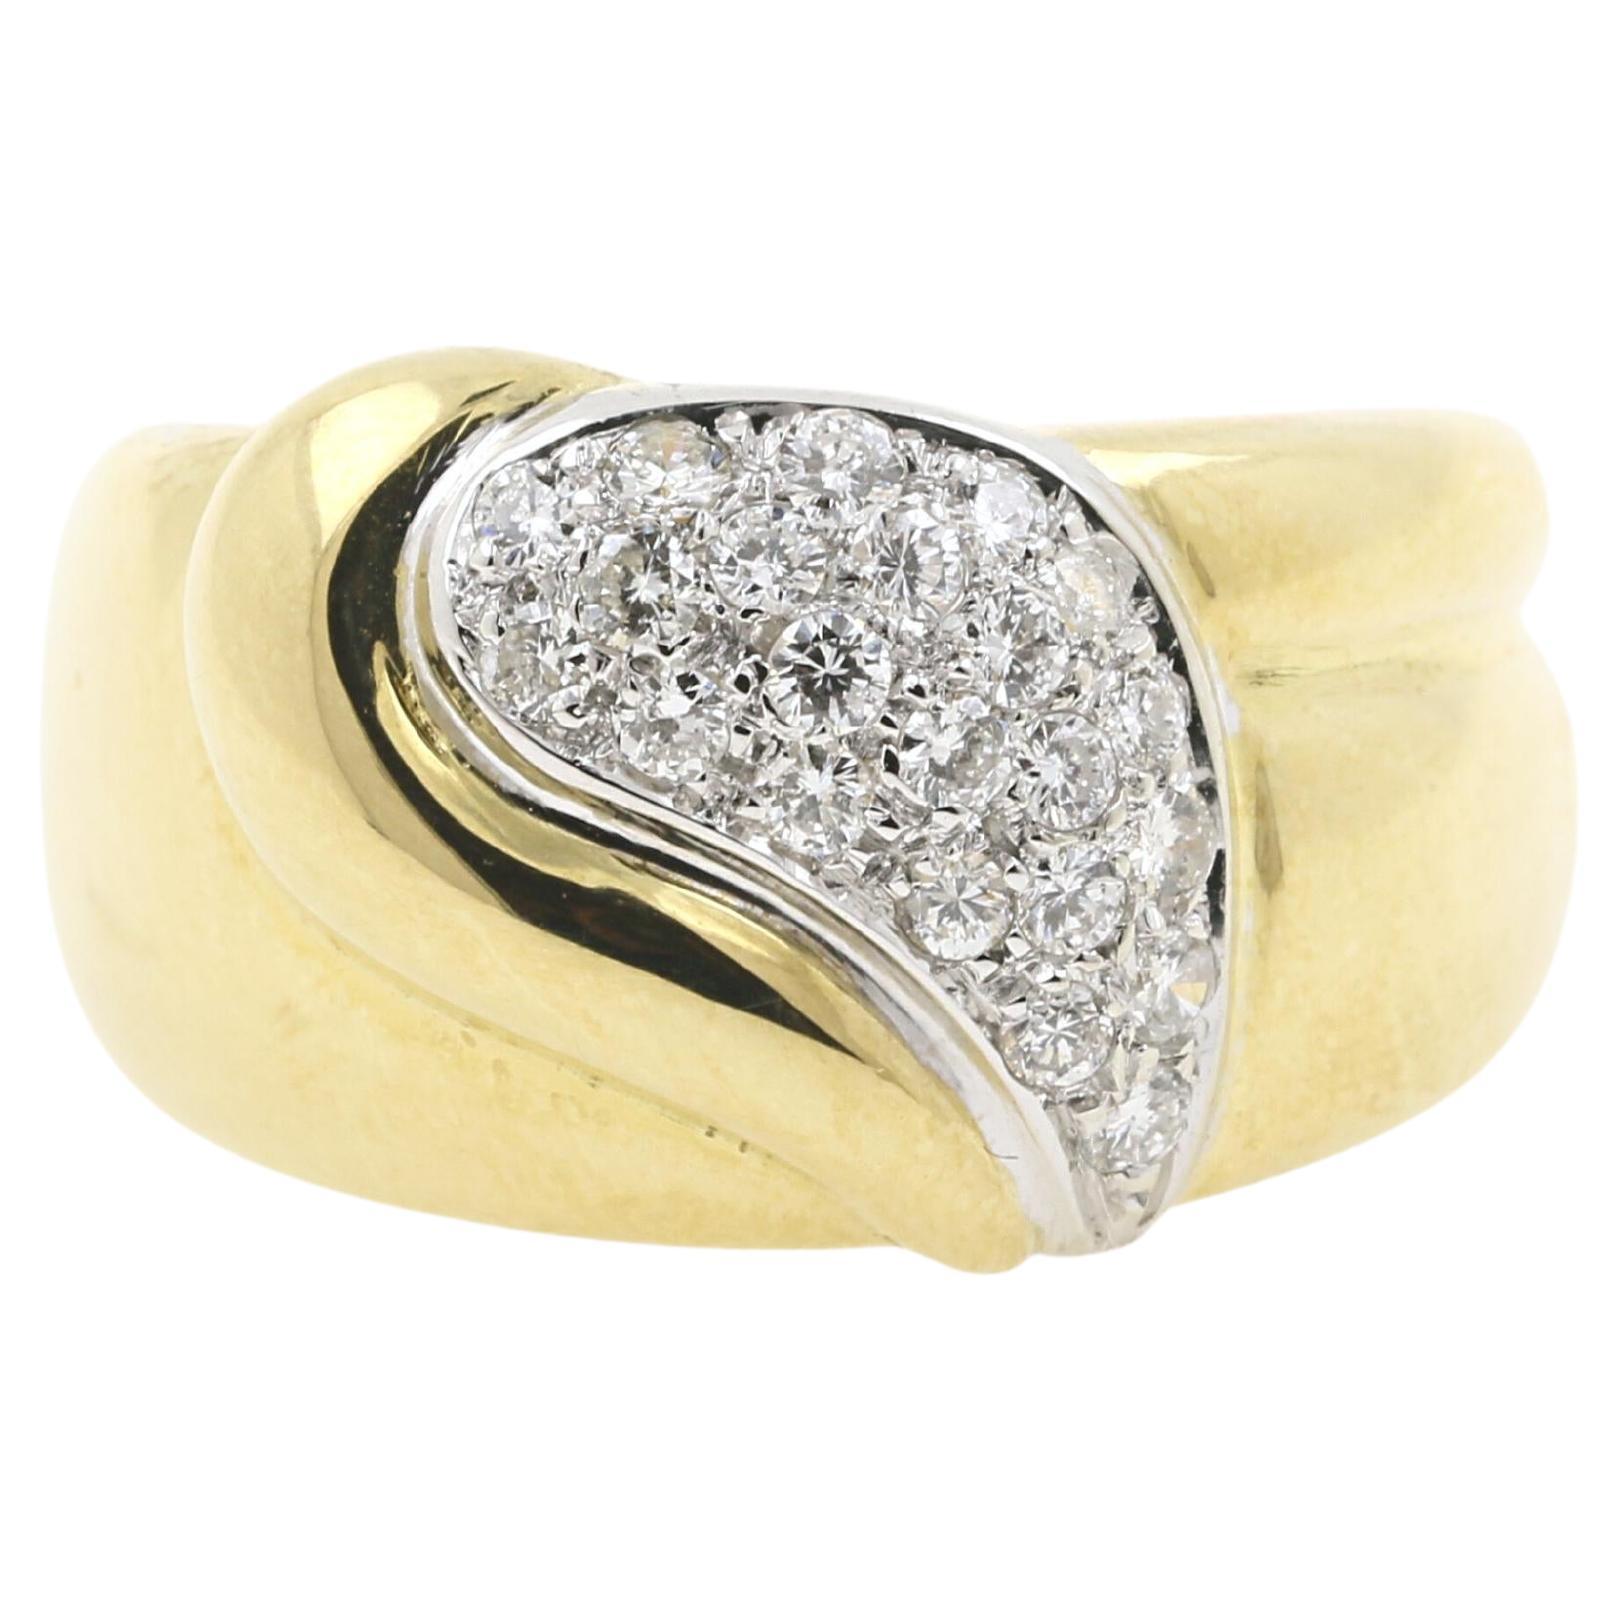 18 Karat Yellow and White Gold "Virgola" Ring with Diamonds